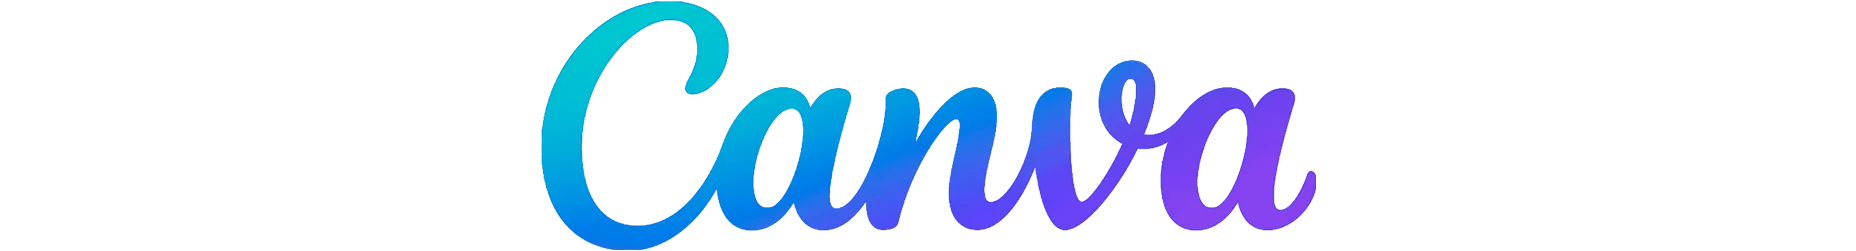 Canva Logo